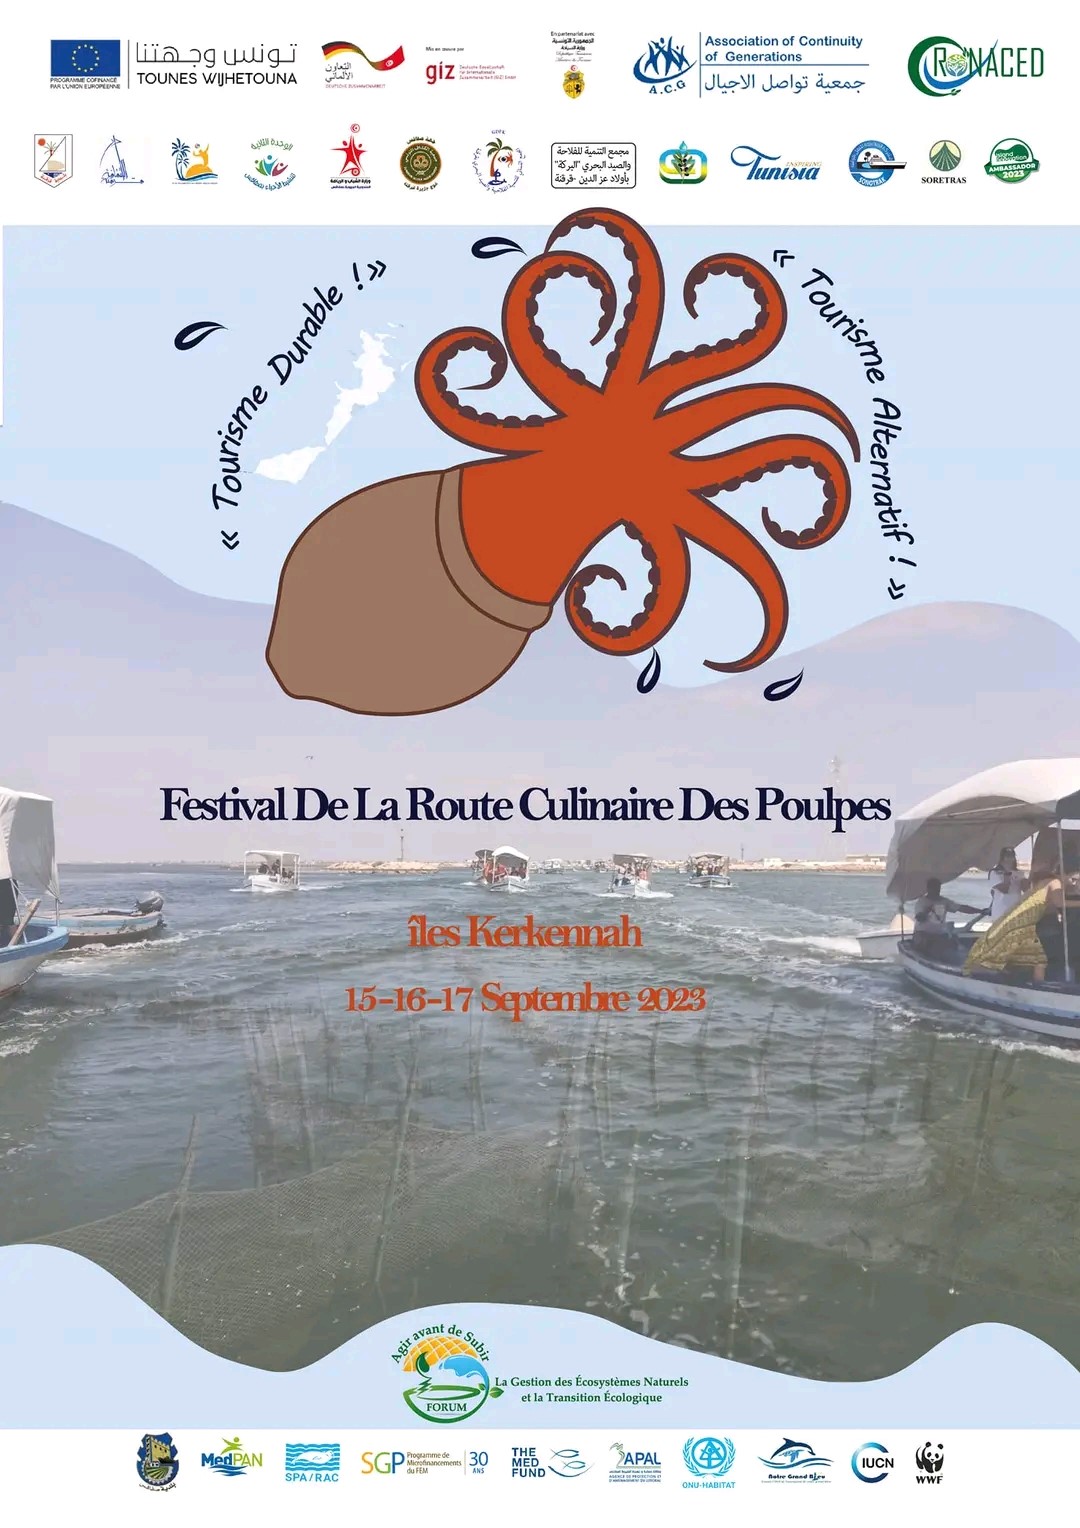 Affiche officielle du Festival de la Route Culinaire des Poulpes Kerkennah